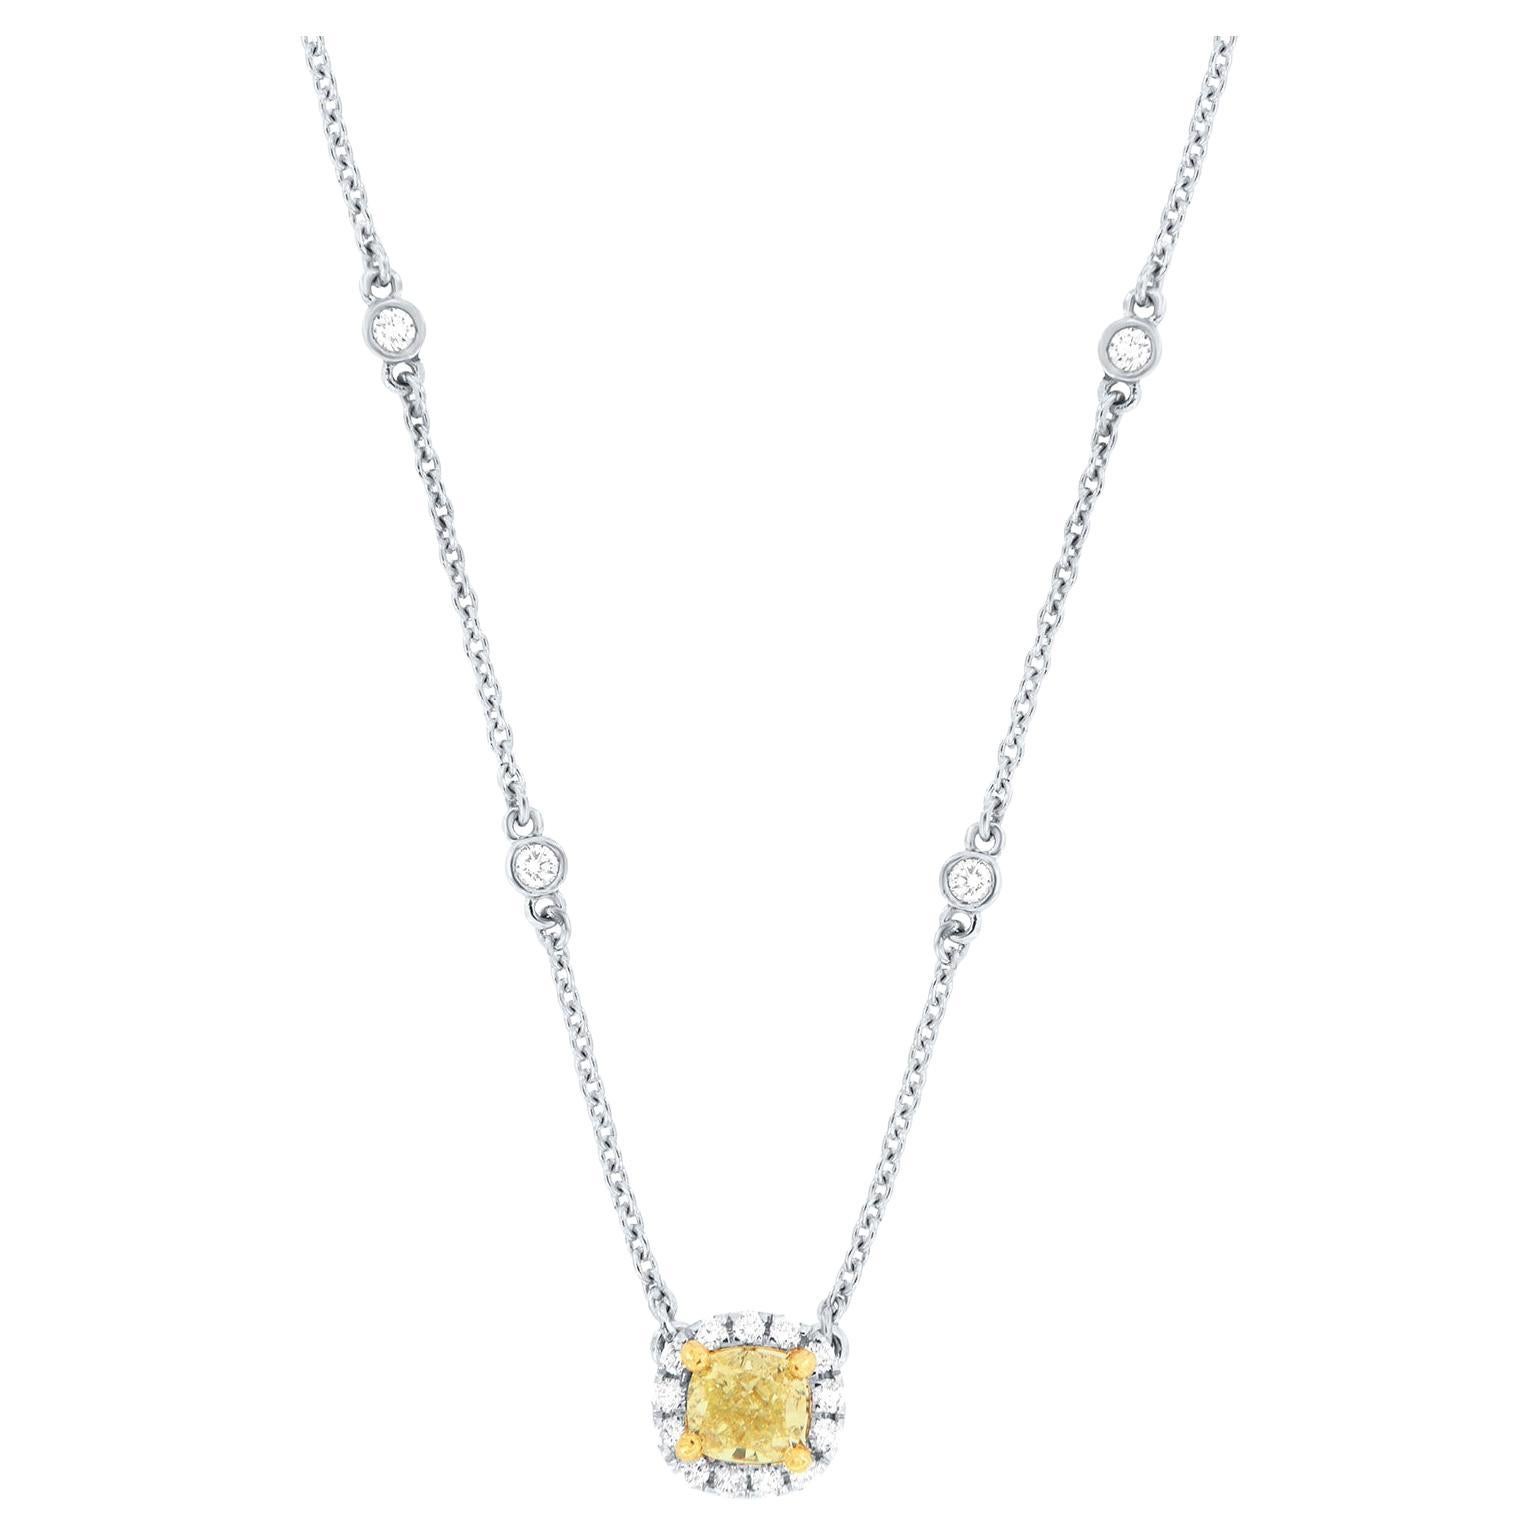 Collier en or blanc et jaune 18 carats avec halo de diamants jaunes taille coussin de 0,31 carat